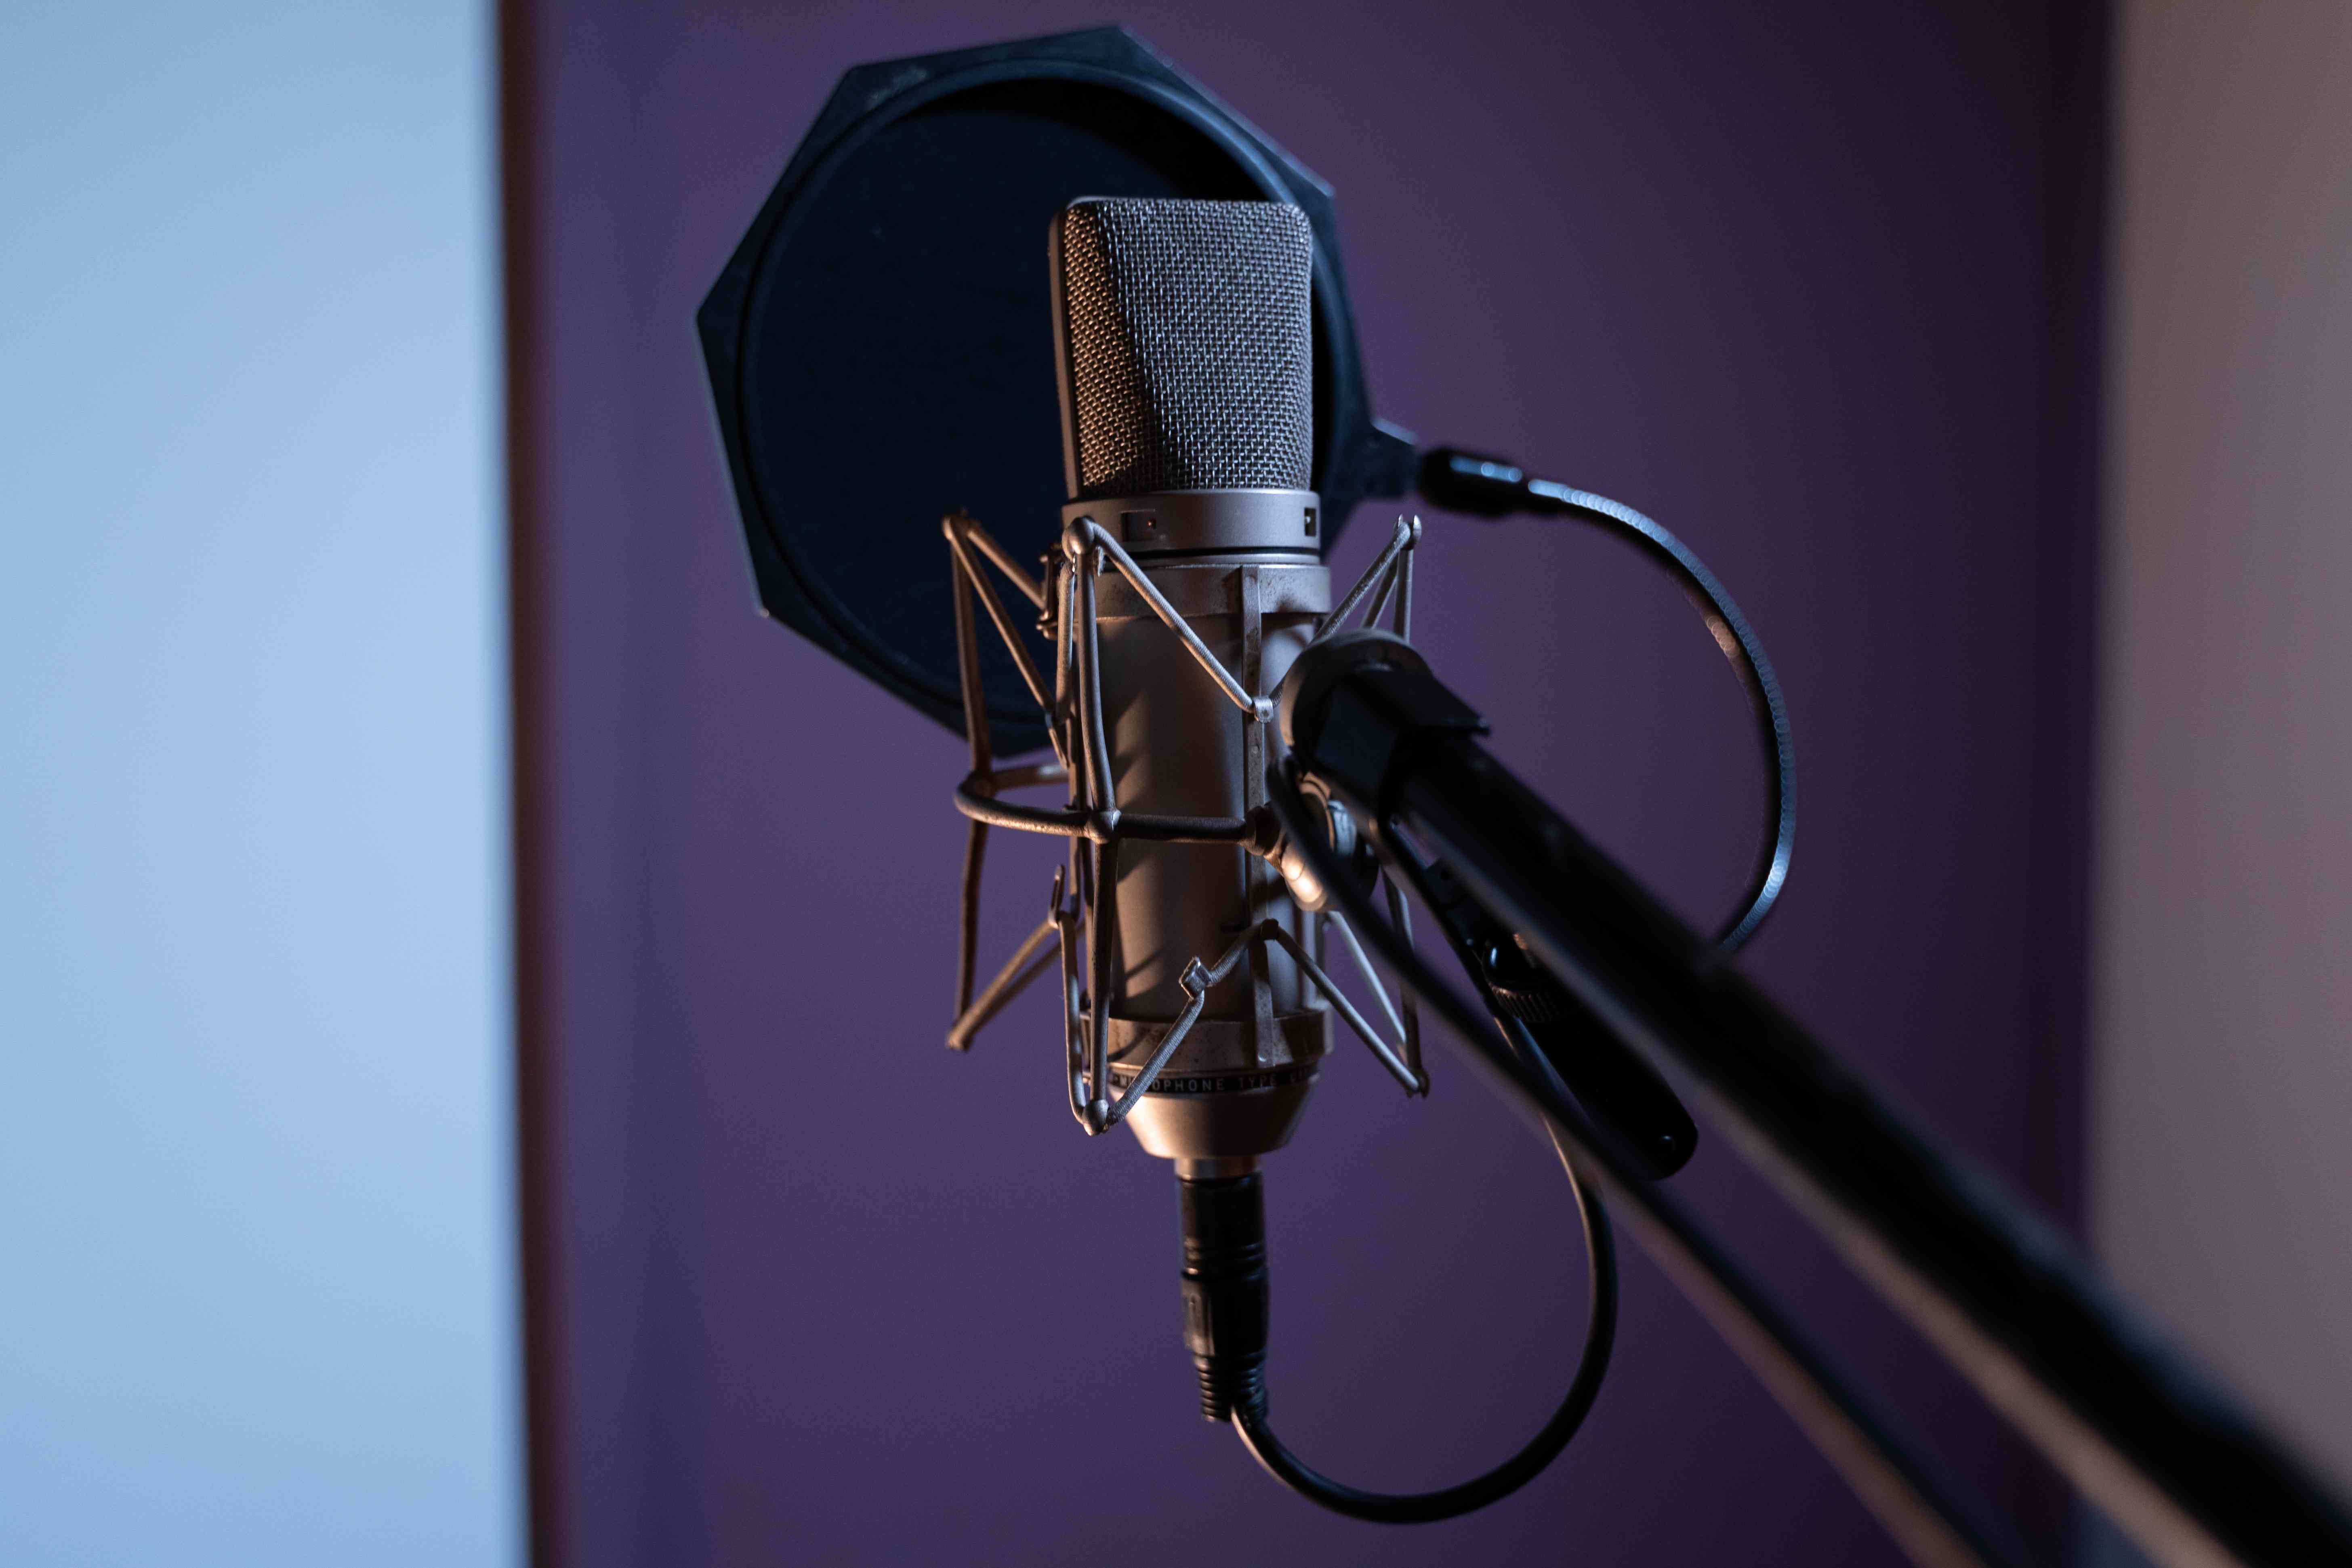 Microfone condensador em estúdio de gravação de música de podcast no ar